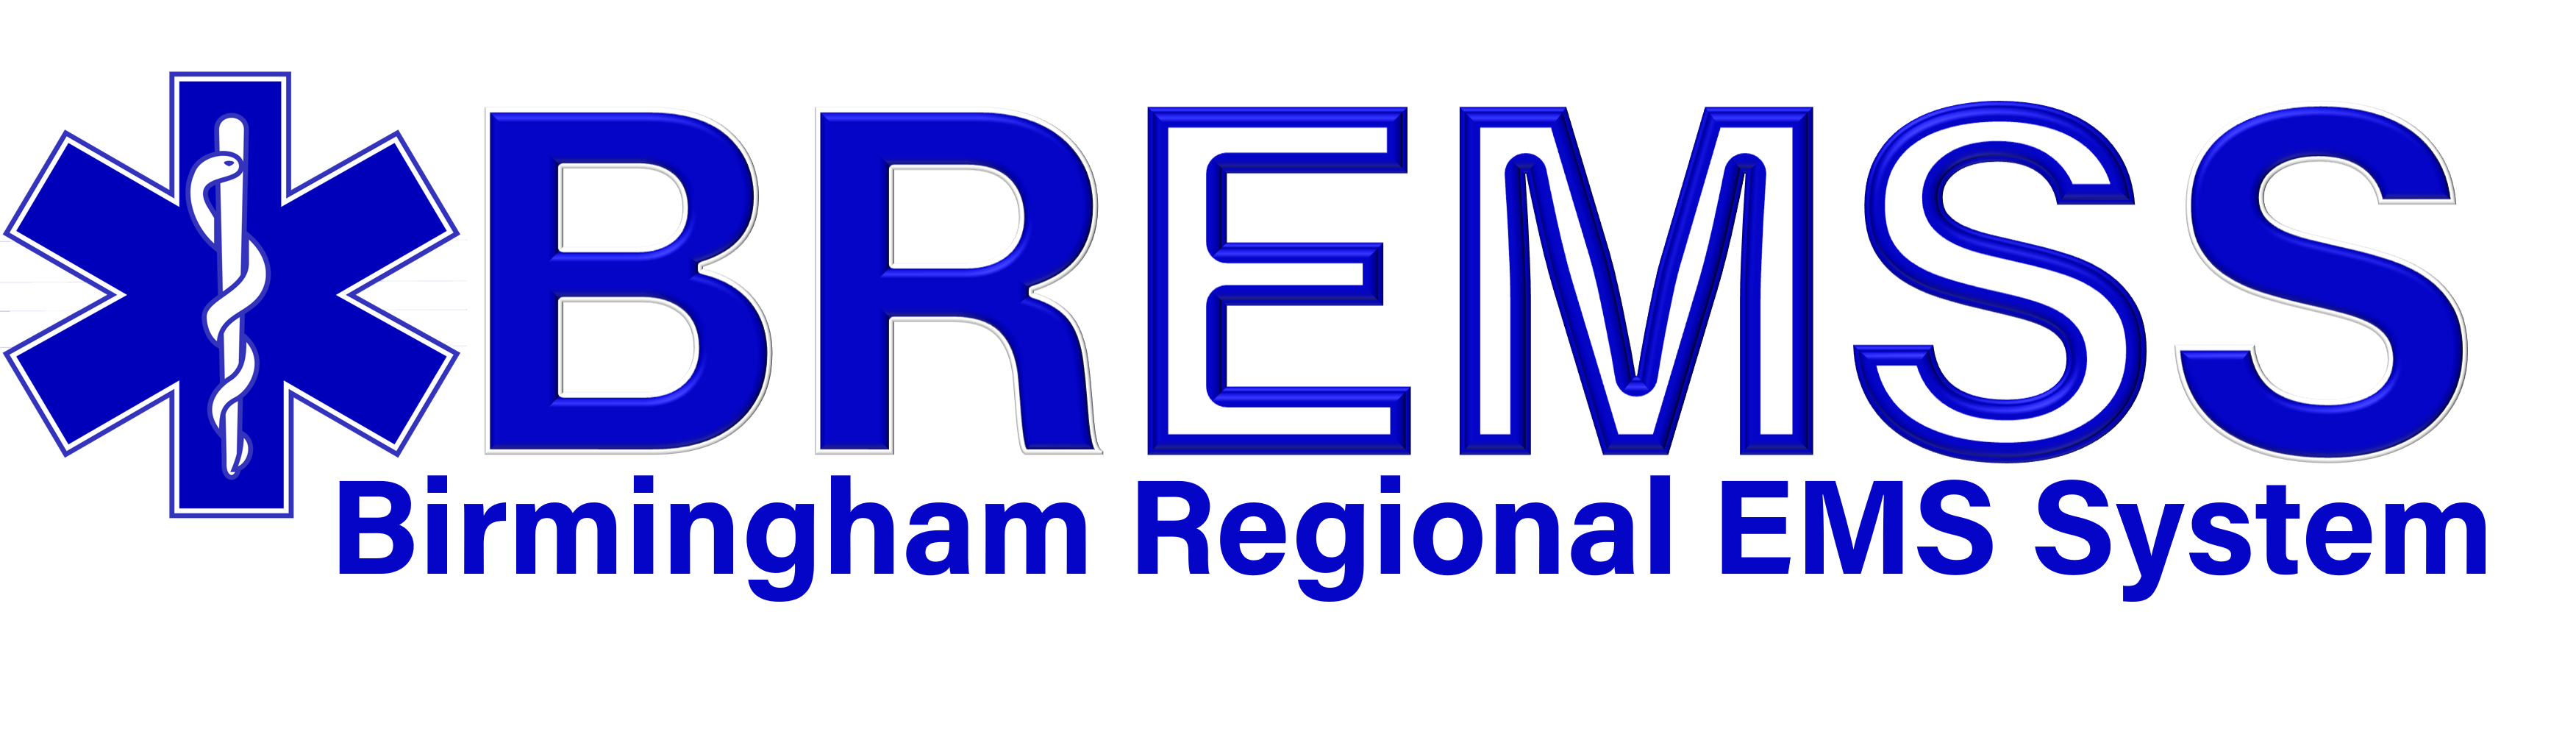 birmingham-regional-ems-system logo